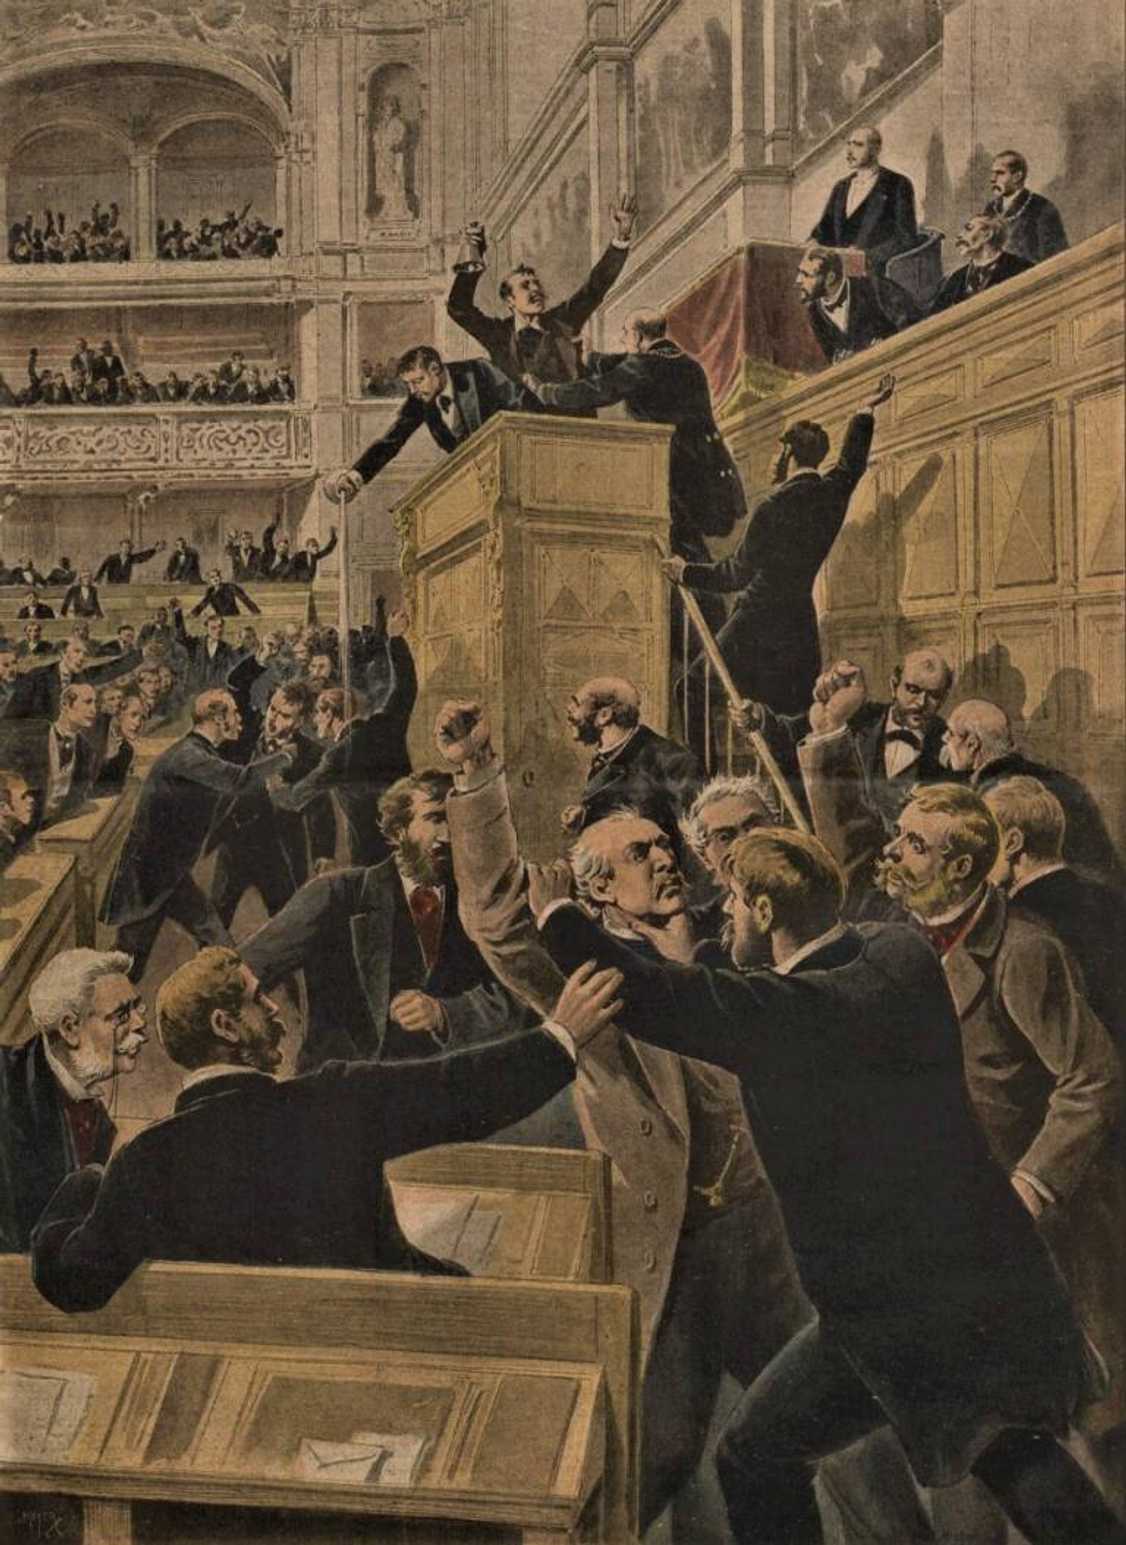 Od počátku 90. let docházelo k obstrukcím v rakouských zákonodárných sborech. Jedním z vrcholů byla násilná německá obstrukce z listopadu 1897. Rvačky a násilí tehdy poutaly pozornost celé Evropy, dokladem je tato francouzská karikatura.
